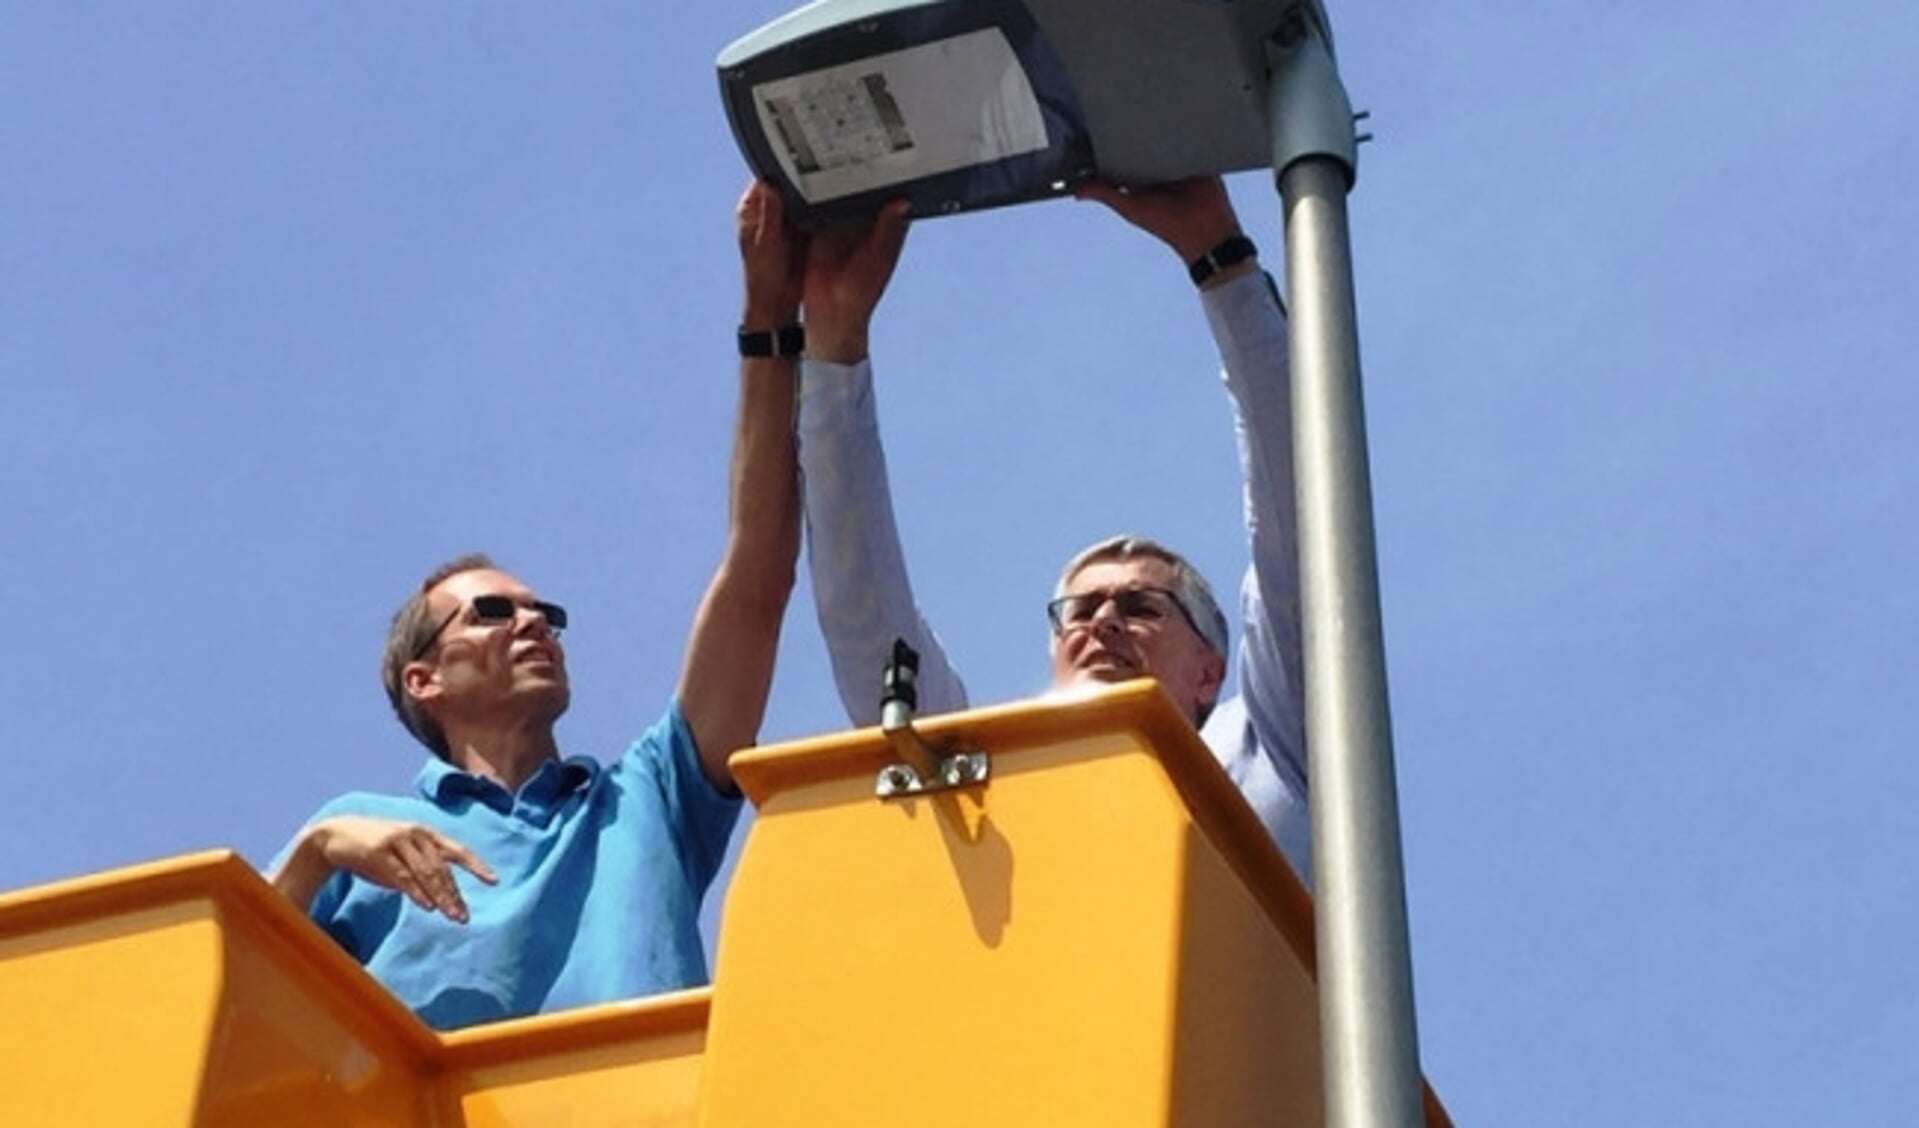  De gemeente Dronten brengt LED-verlichting aan.